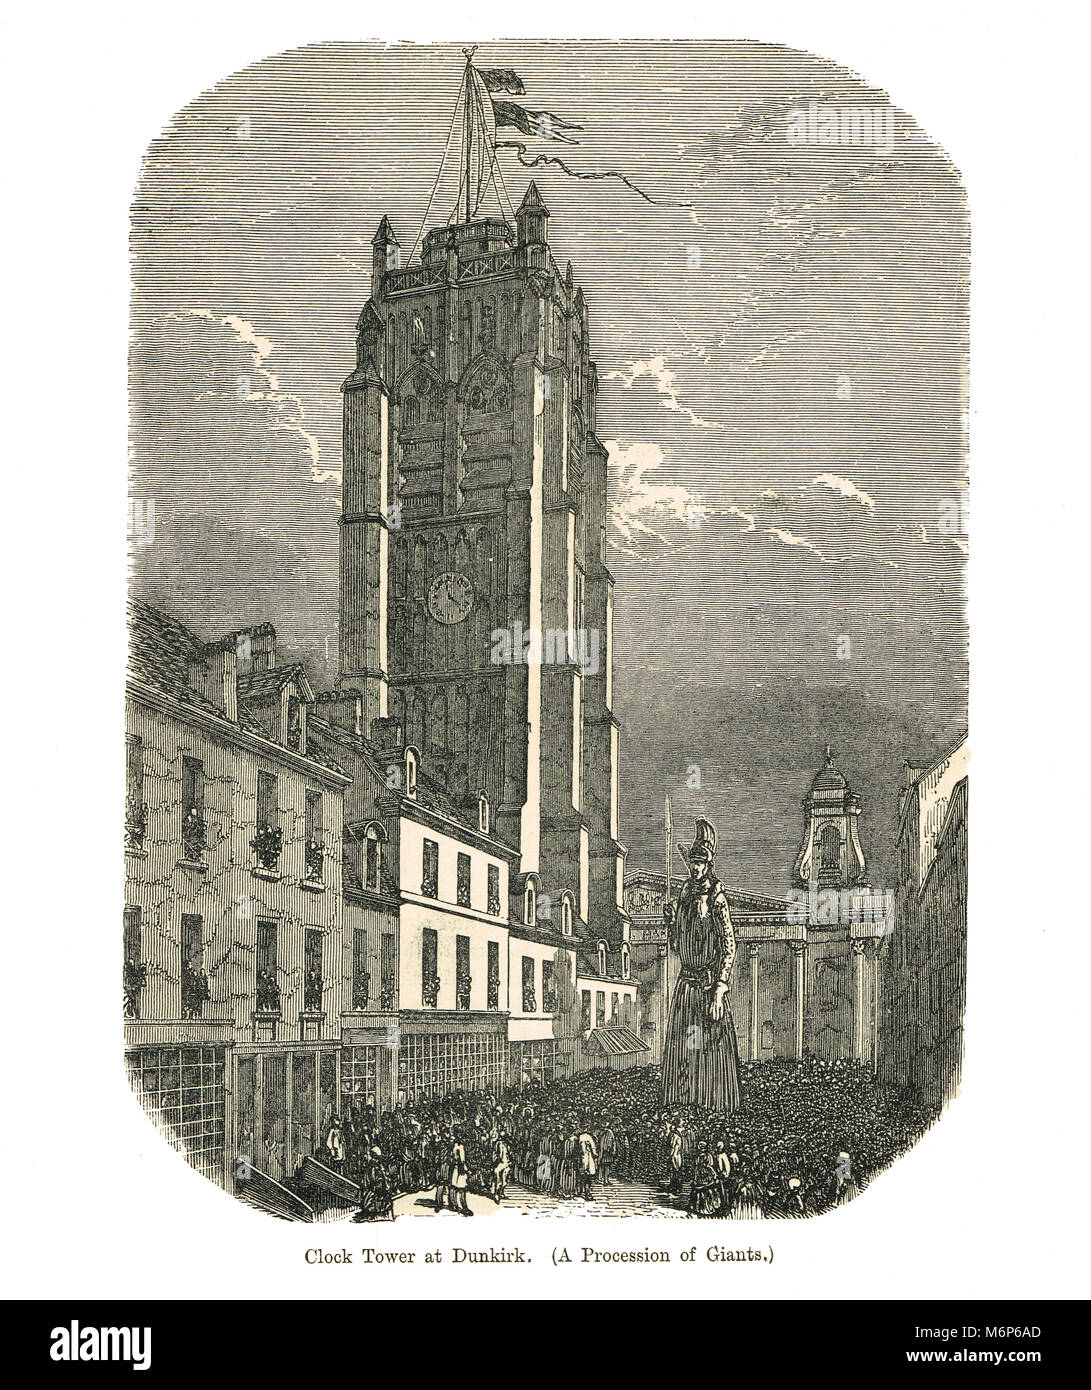 Tour de l'horloge à Dunkerque, une procession de géants, 19e siècle Banque D'Images